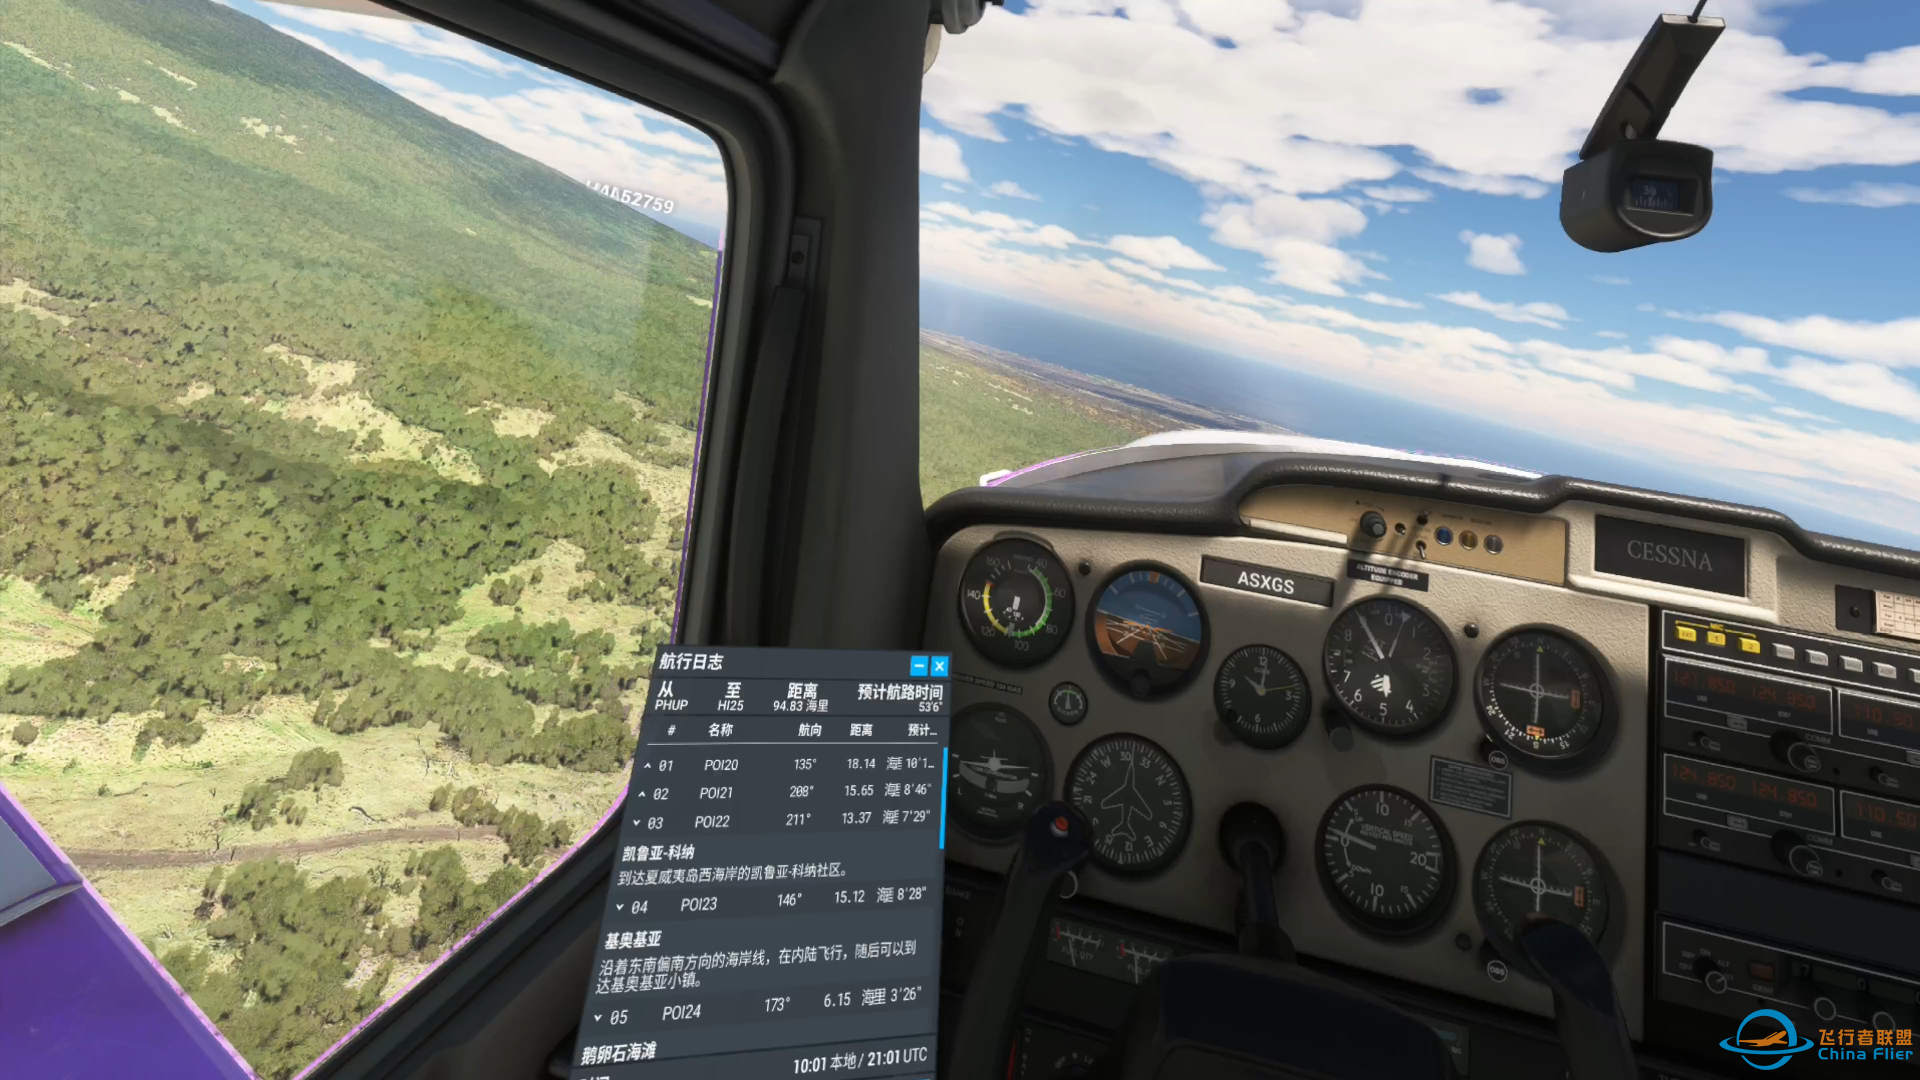 微软模拟飞行 601 VR 夏威夷阿罗哈航空 郊野之行-636 